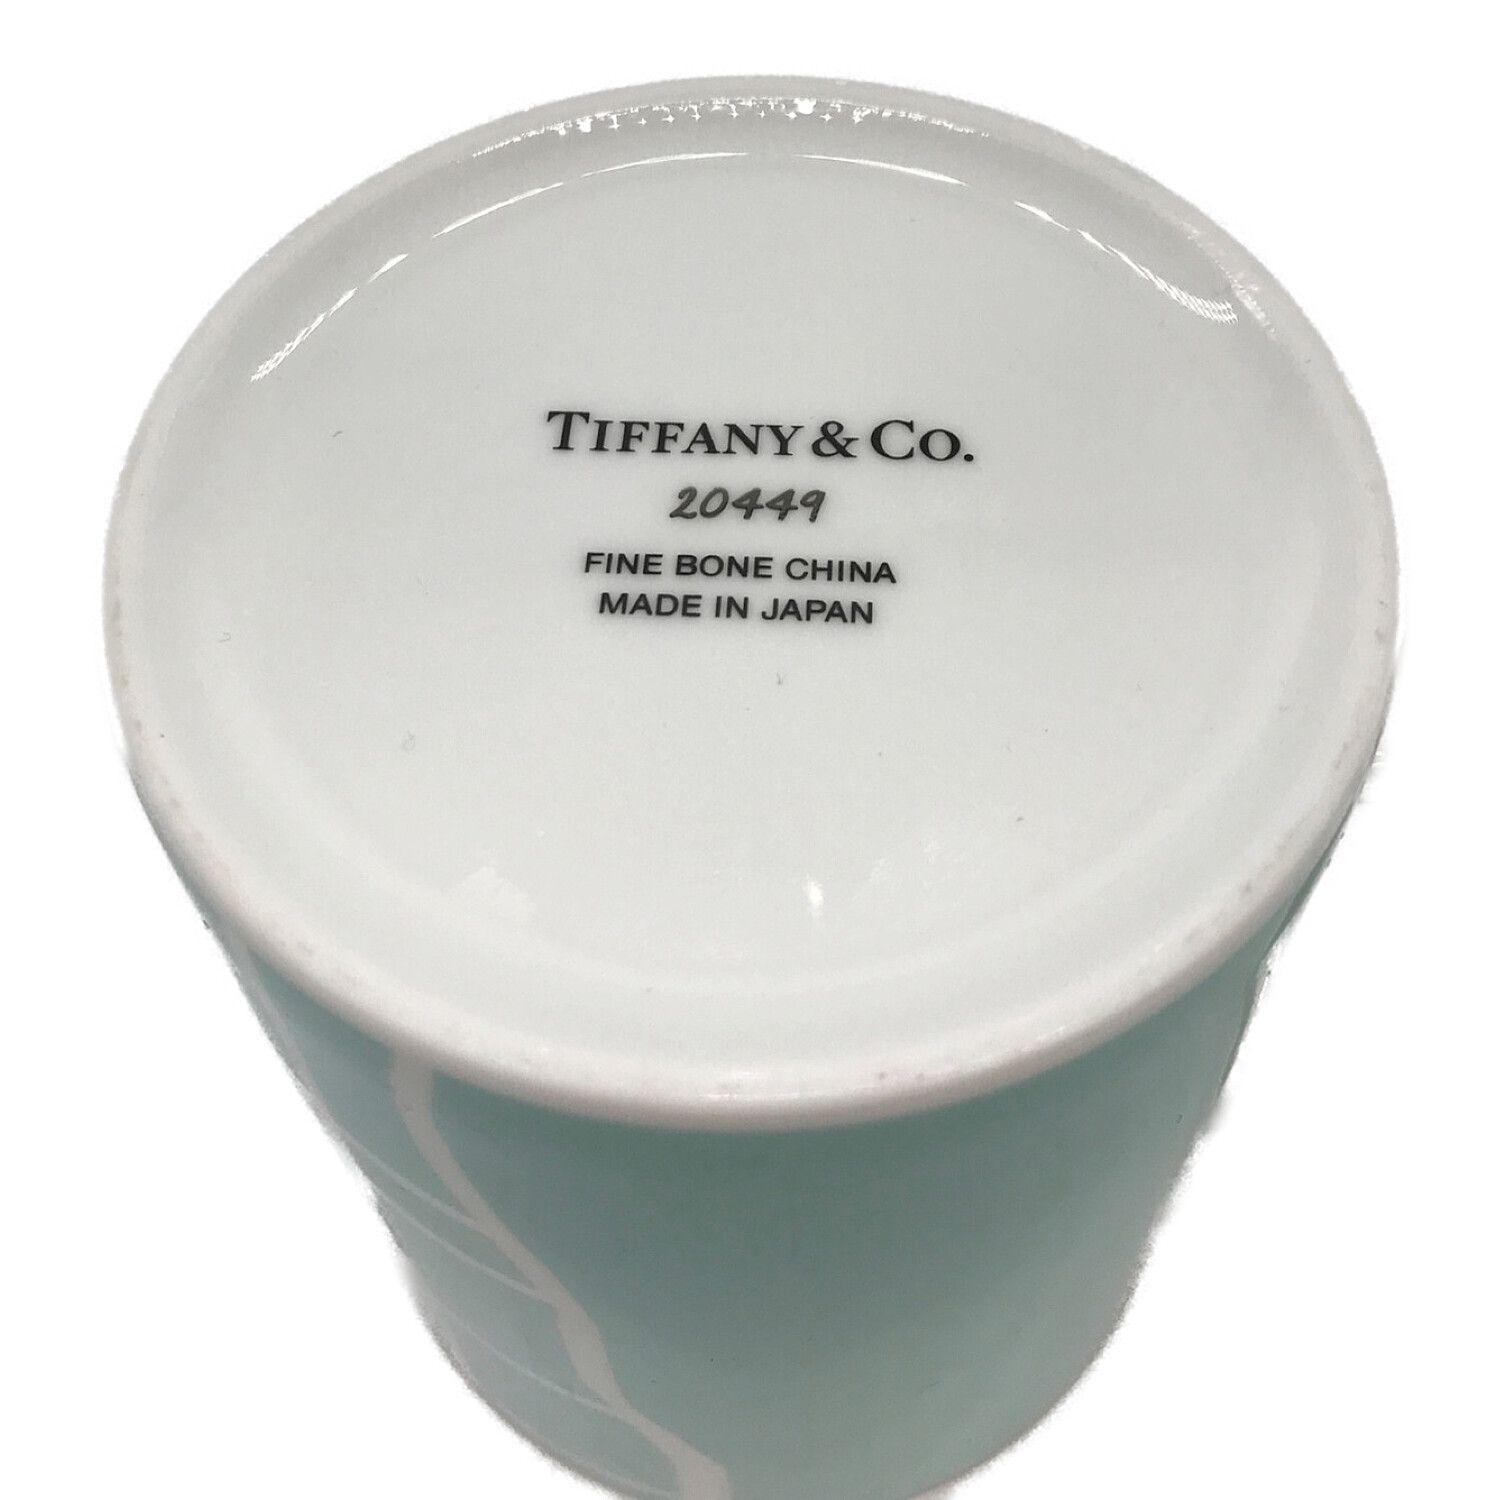 TIFFANY & Co. (ティファニー) マグカップ 20449 NY限定品